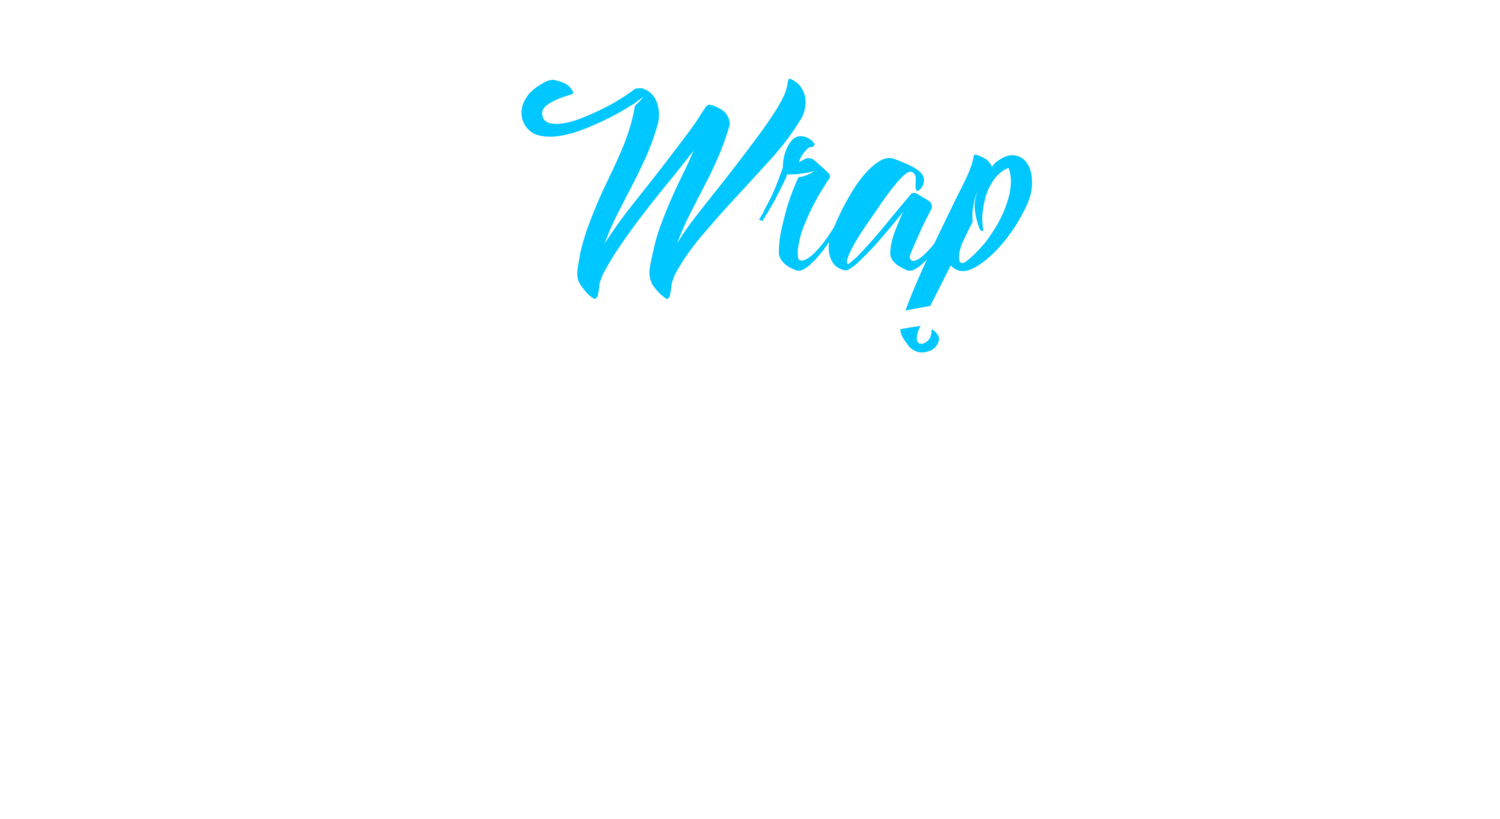 The Wrap Sanctuary